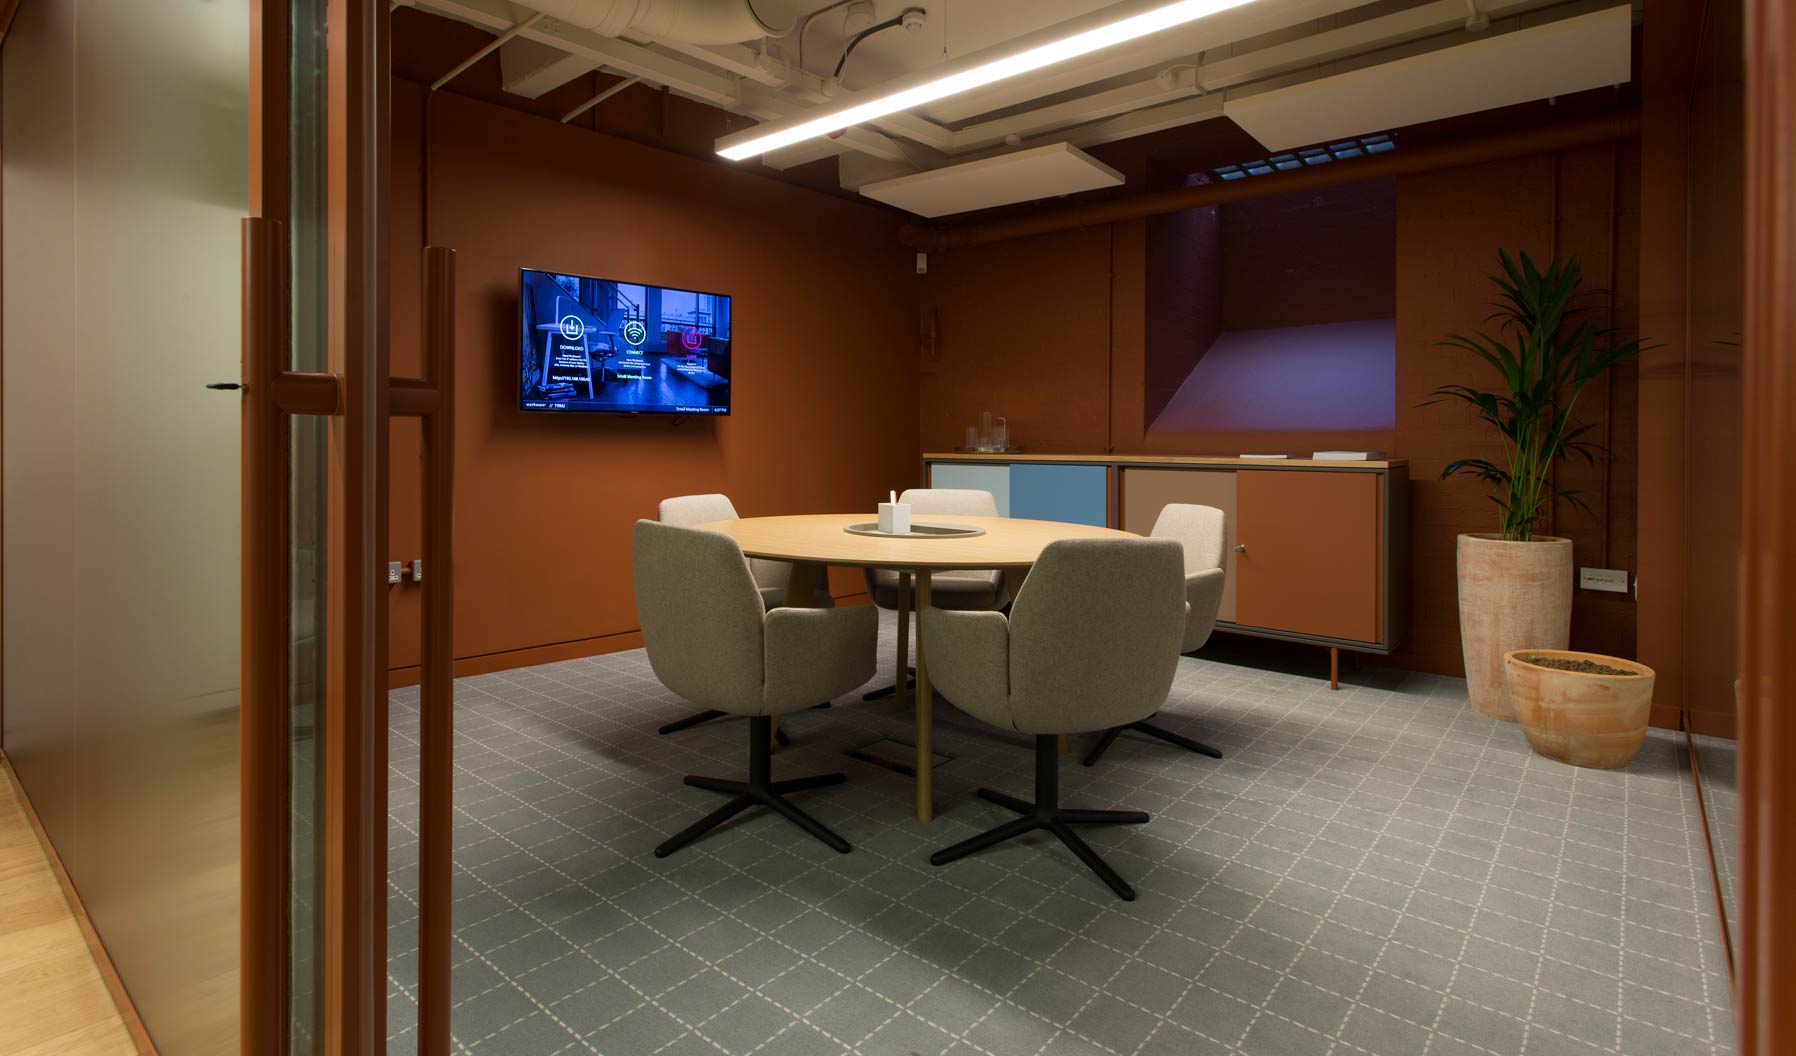 Les fauteuils Poppy et la technologie Workware allient confort et partage d’informations, pour créer la salle de réunion idéale.